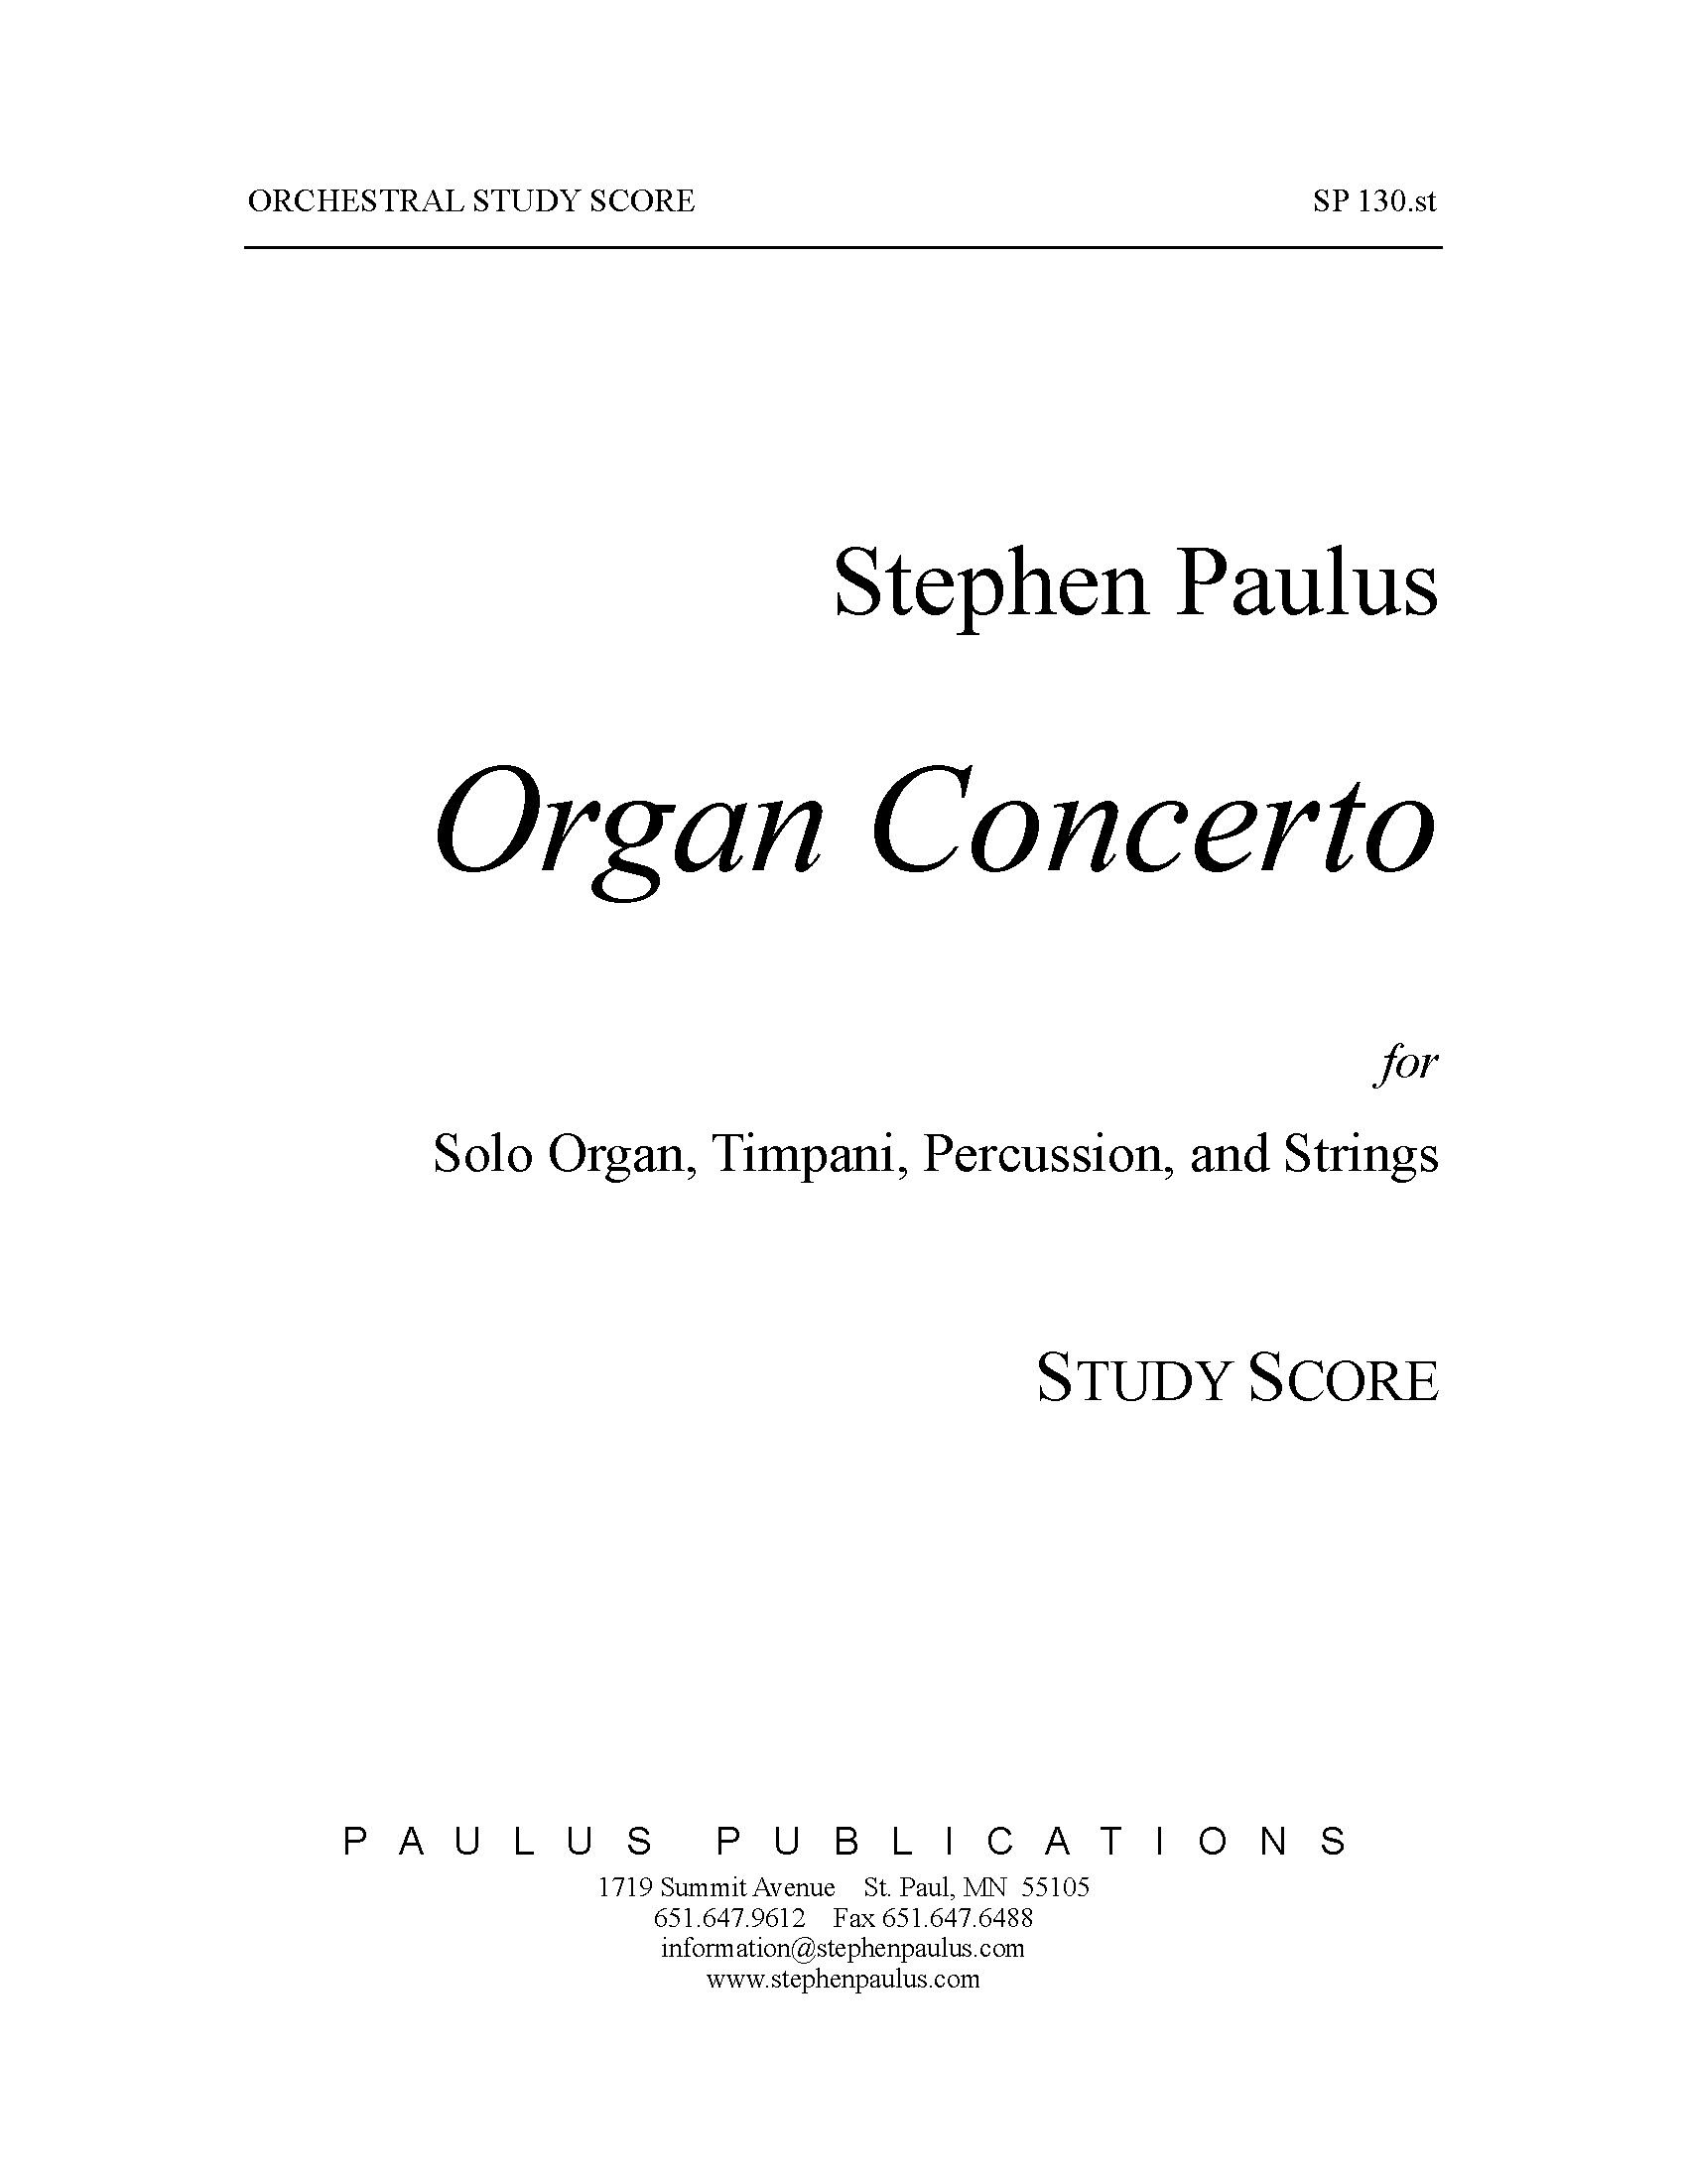 Organ Concerto for Organ, Timpani, Percussion & Strings